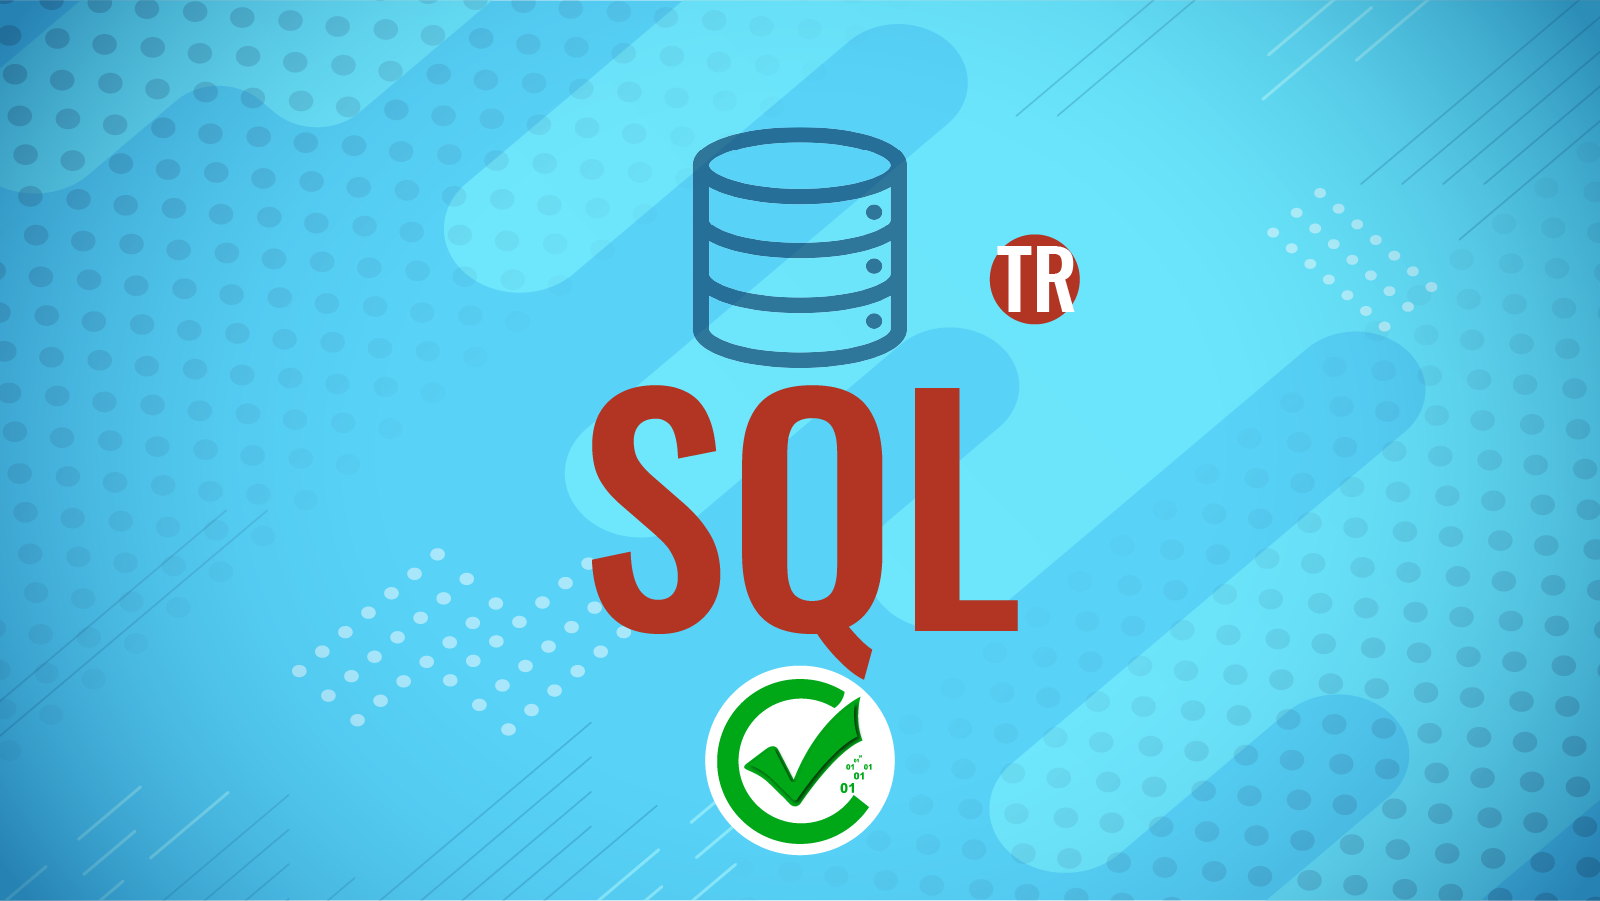 SQL (106-116)